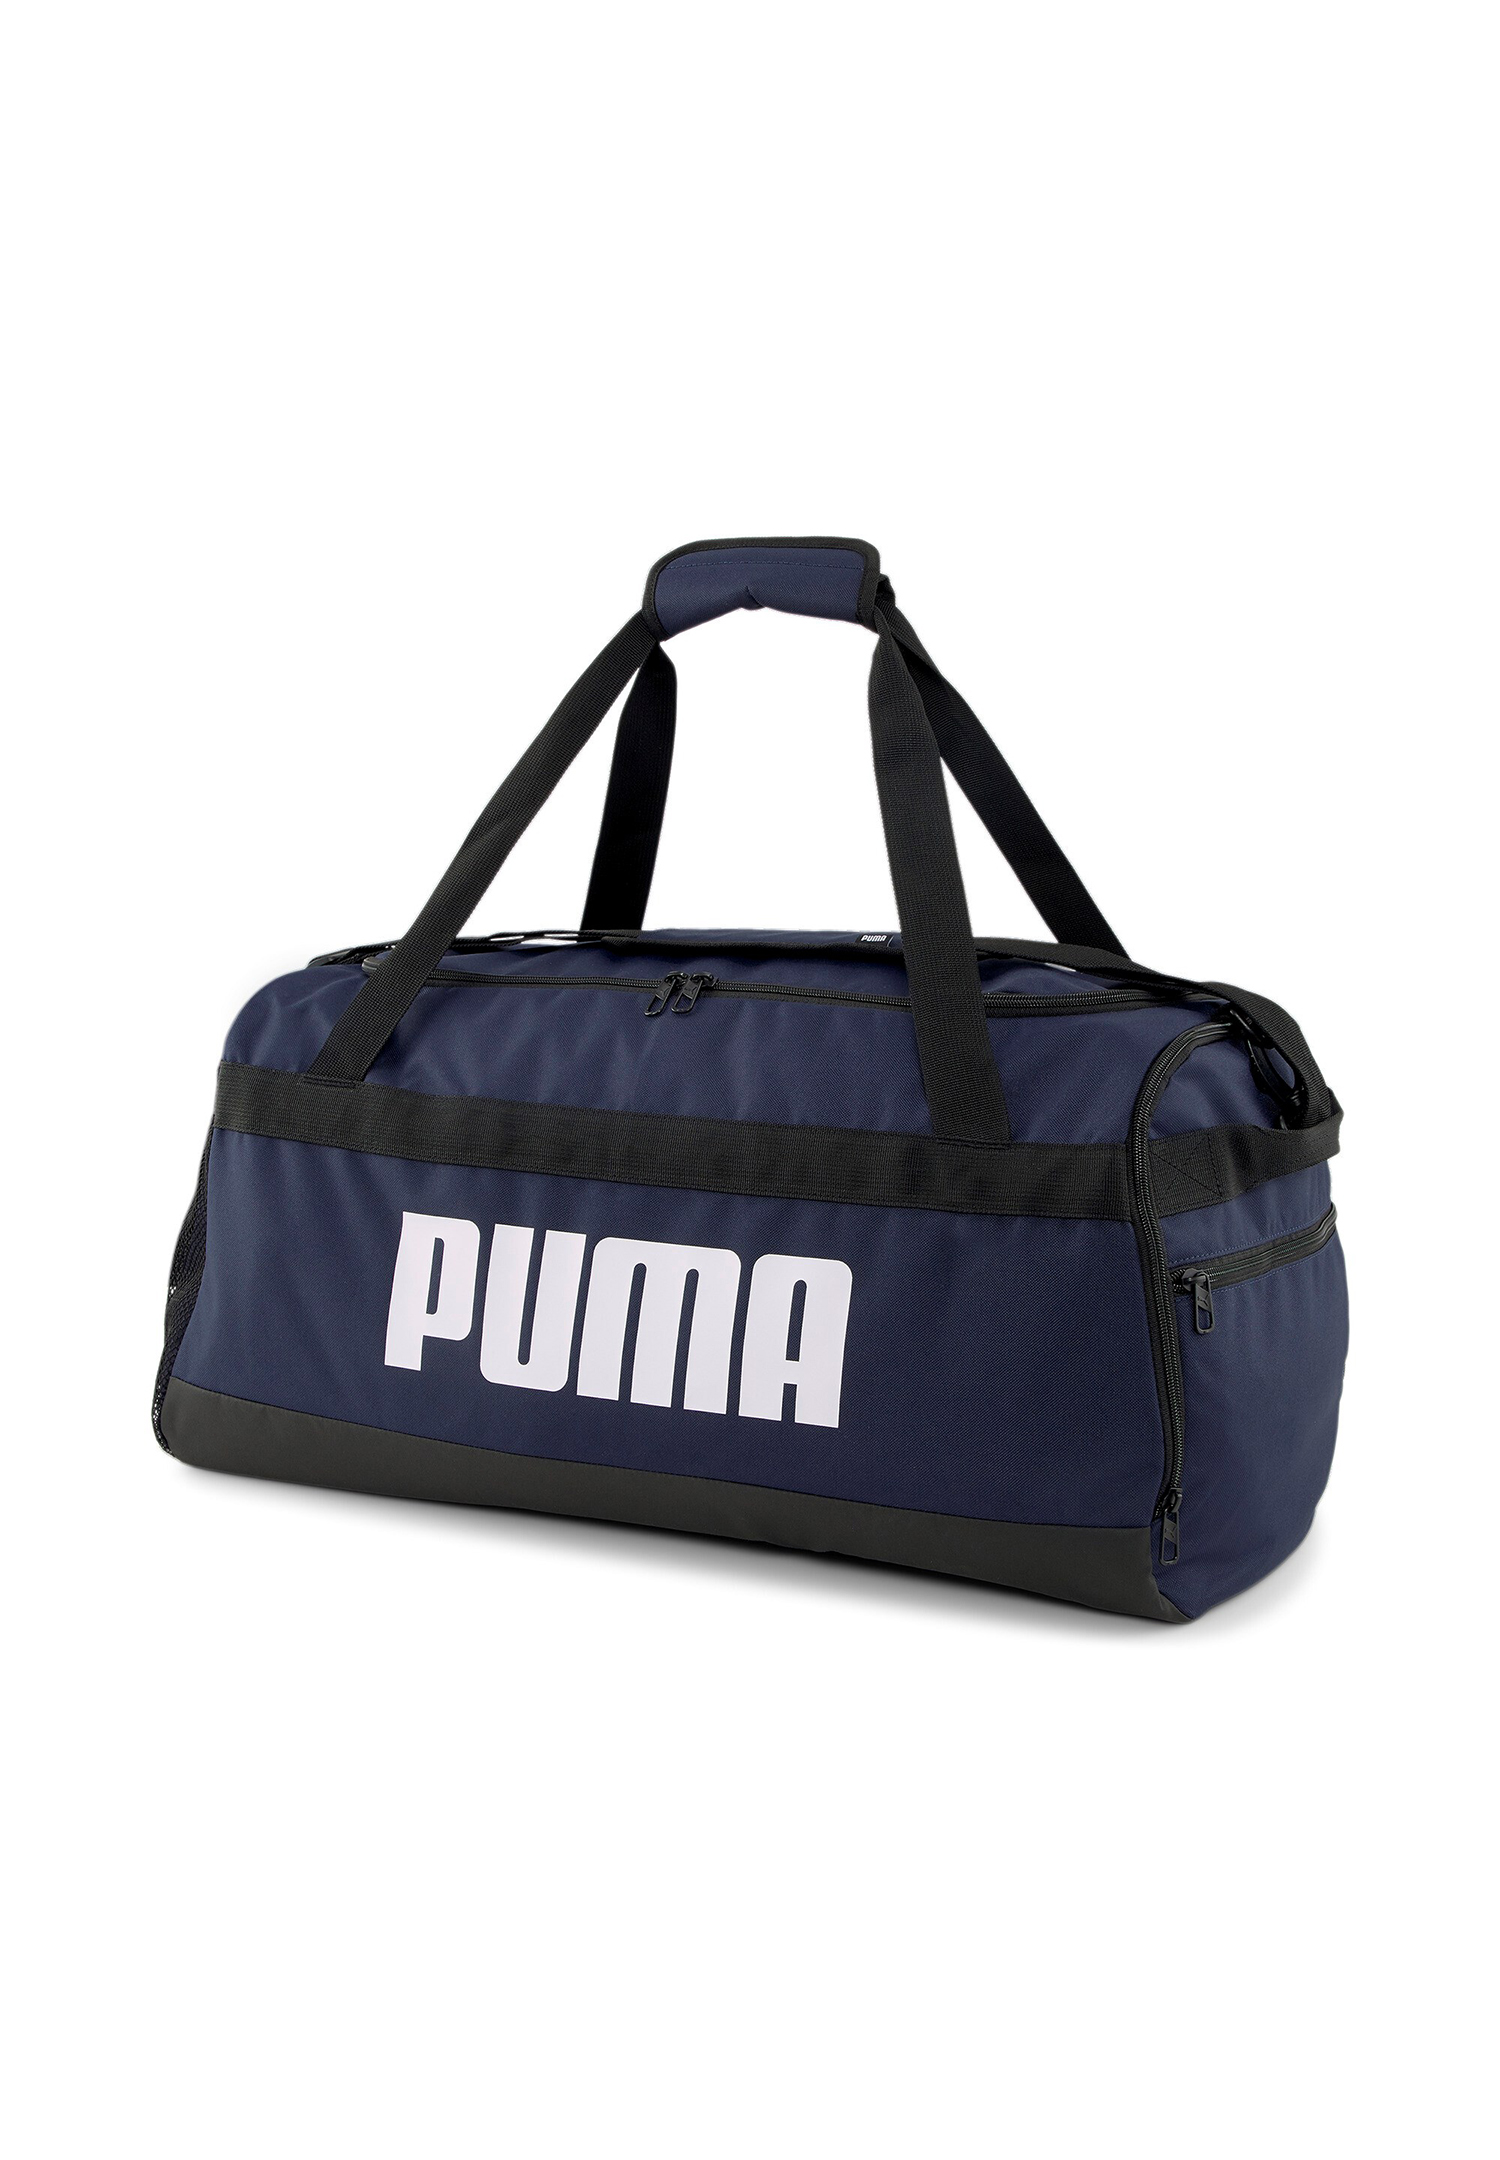 Puma Challenger Duffel Bag M 58L Sporttasche 079531 navy